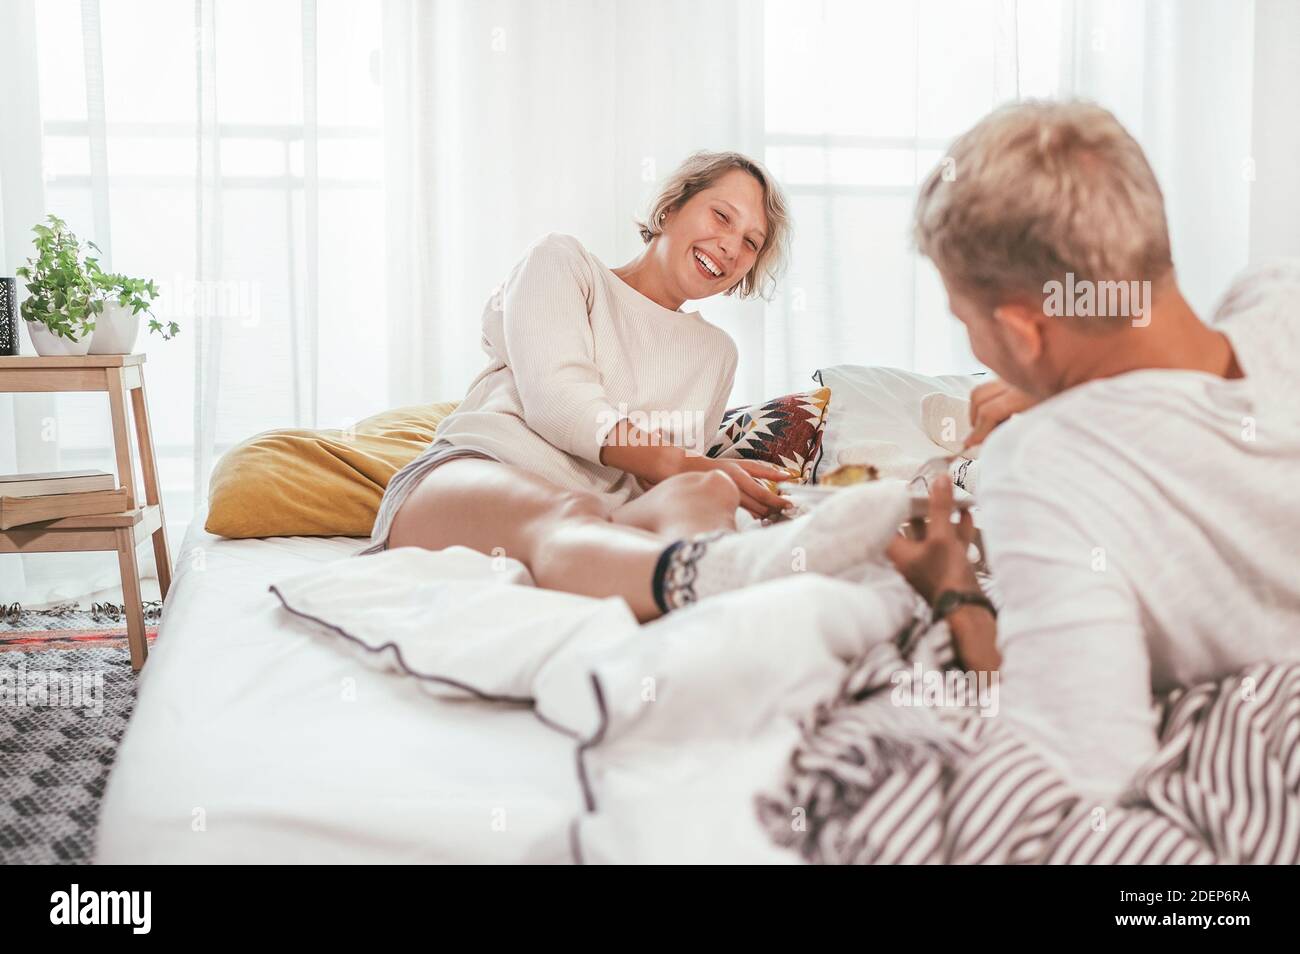 Lachend blonde Haare junge Erwachsene Paar in Pyjamas faul entspannen in einem gemütlichen Bett im Schlafzimmer liegen und mit einem friedlich unbeschwerten Plaudern. Paar Stockfoto